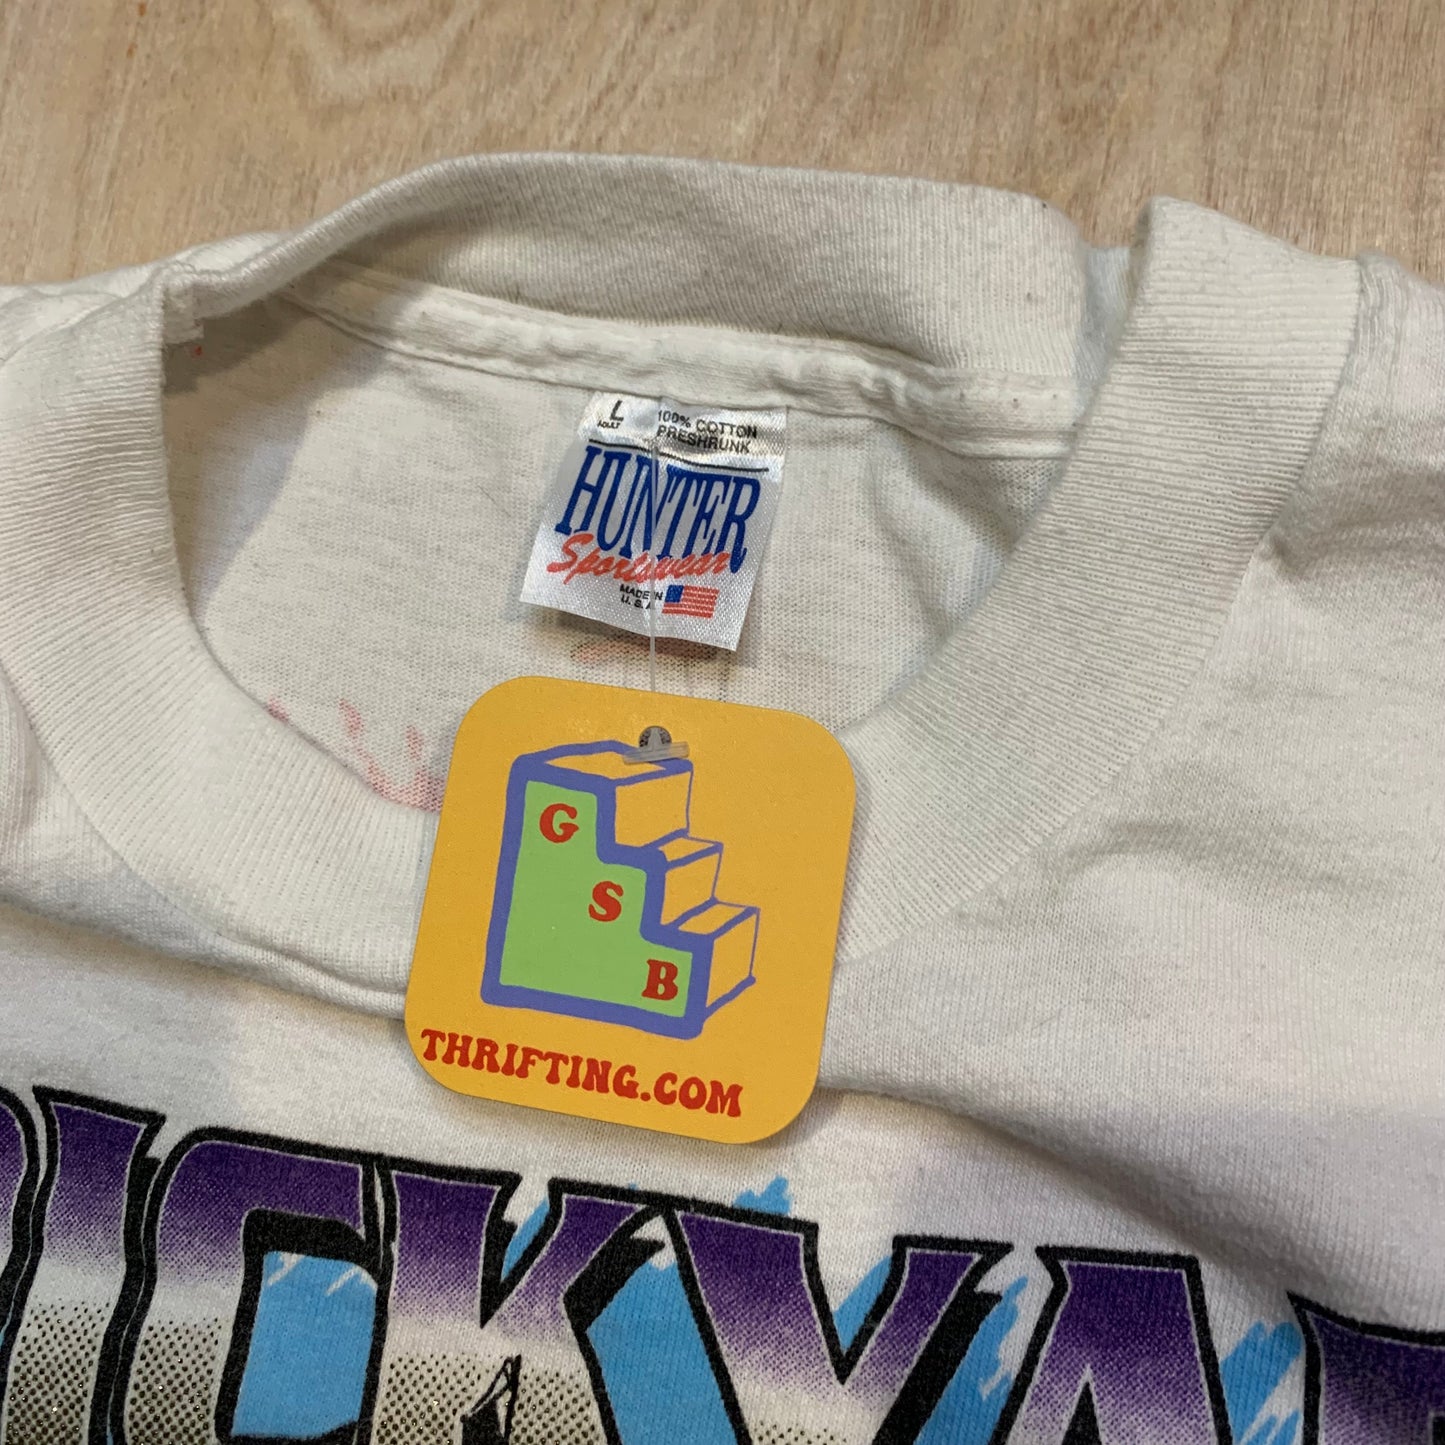 1994 Brickyard 400 Single Stitch T-Shirt